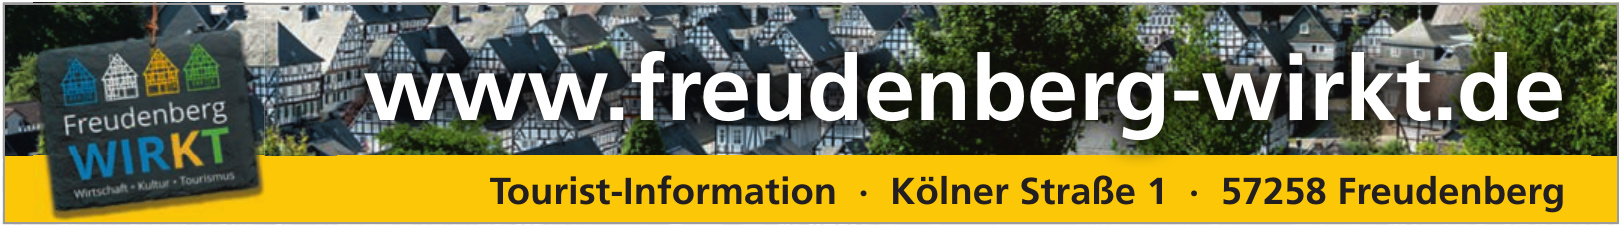 Freudenberg Wirkt - Tourist-Information